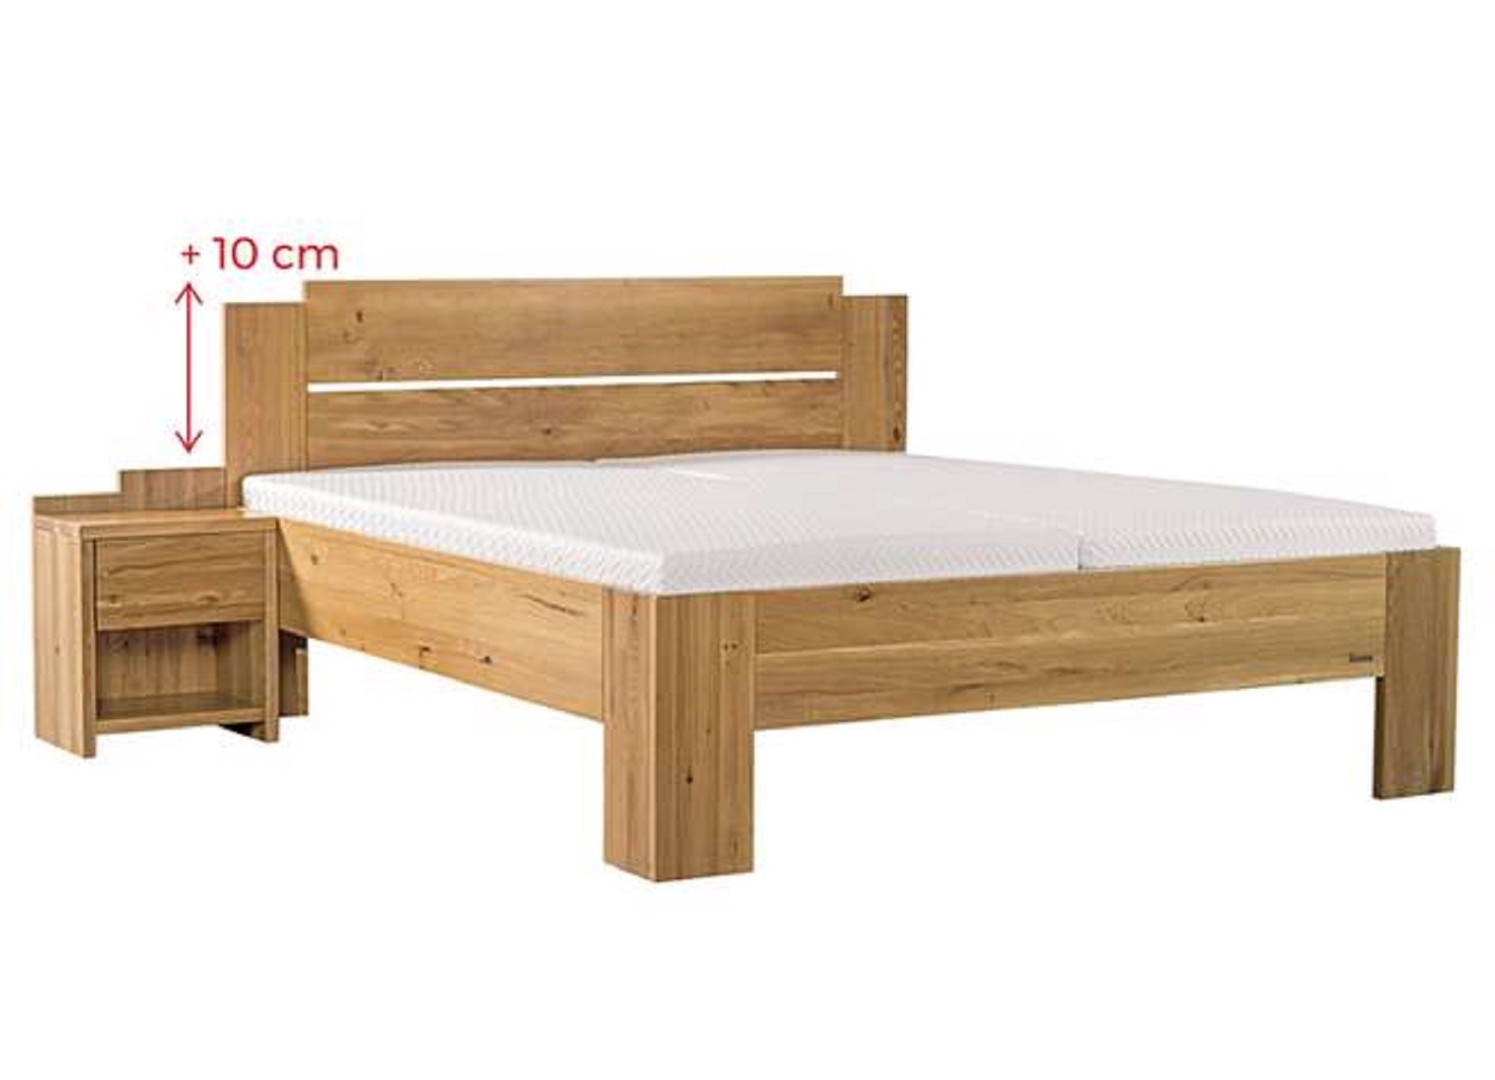 Ahorn GRADO MAX - masivní buková postel se zvýšeným čelem 80 x 190 cm, buk masiv